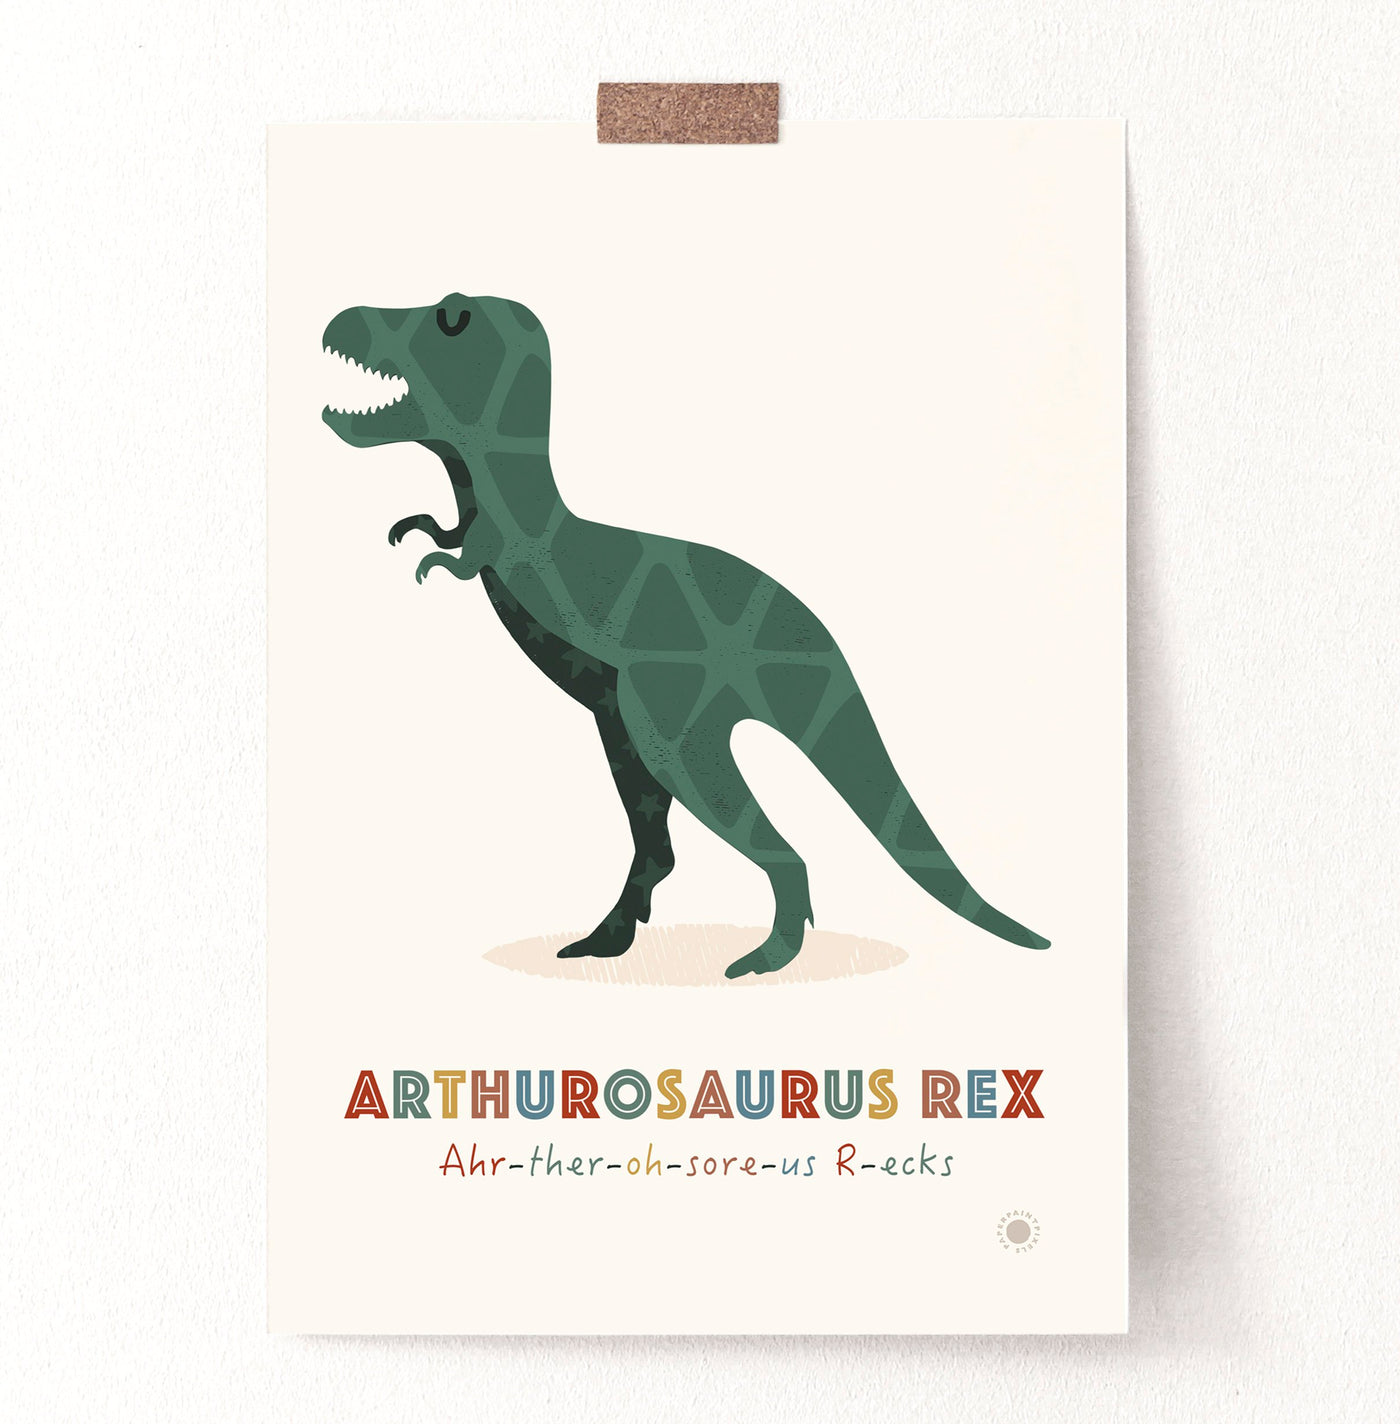 Personalised Dinosaur Alphabet & Nursery Name Art Print Set - PaperPaintPixels